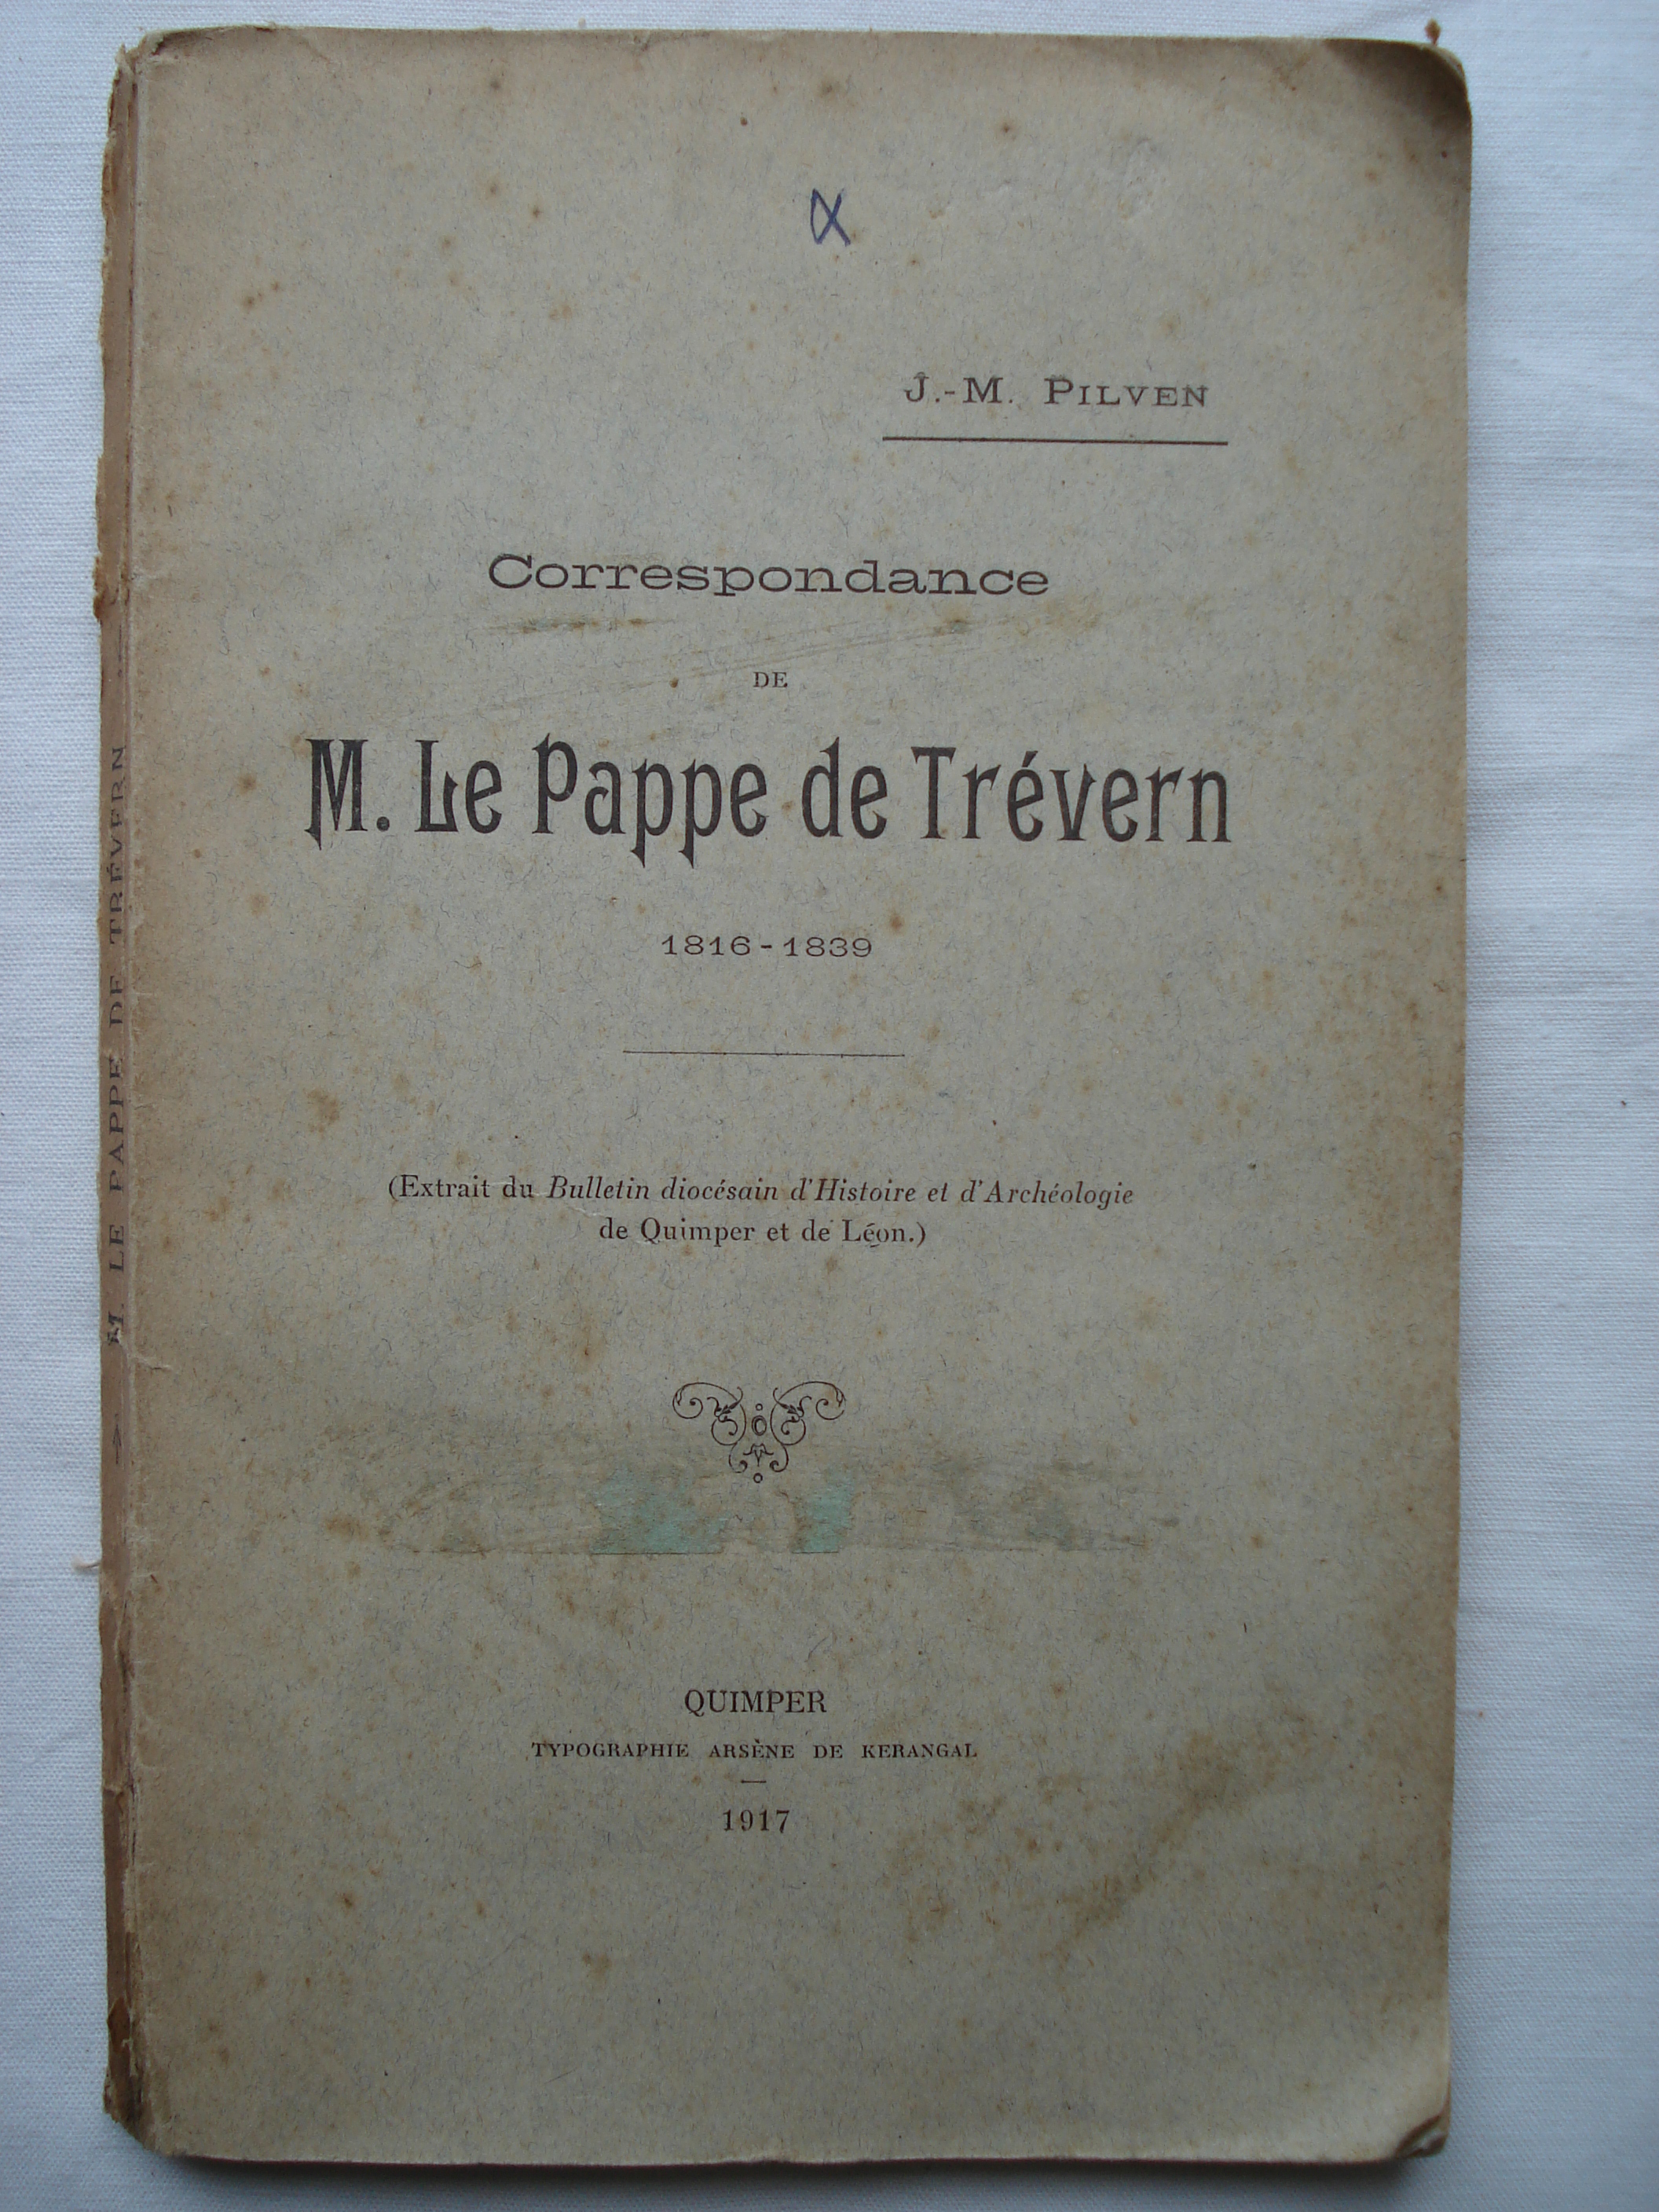 Correspondance M. Le Pappe de Trévern - 1816-1839 by Pilven: Assez